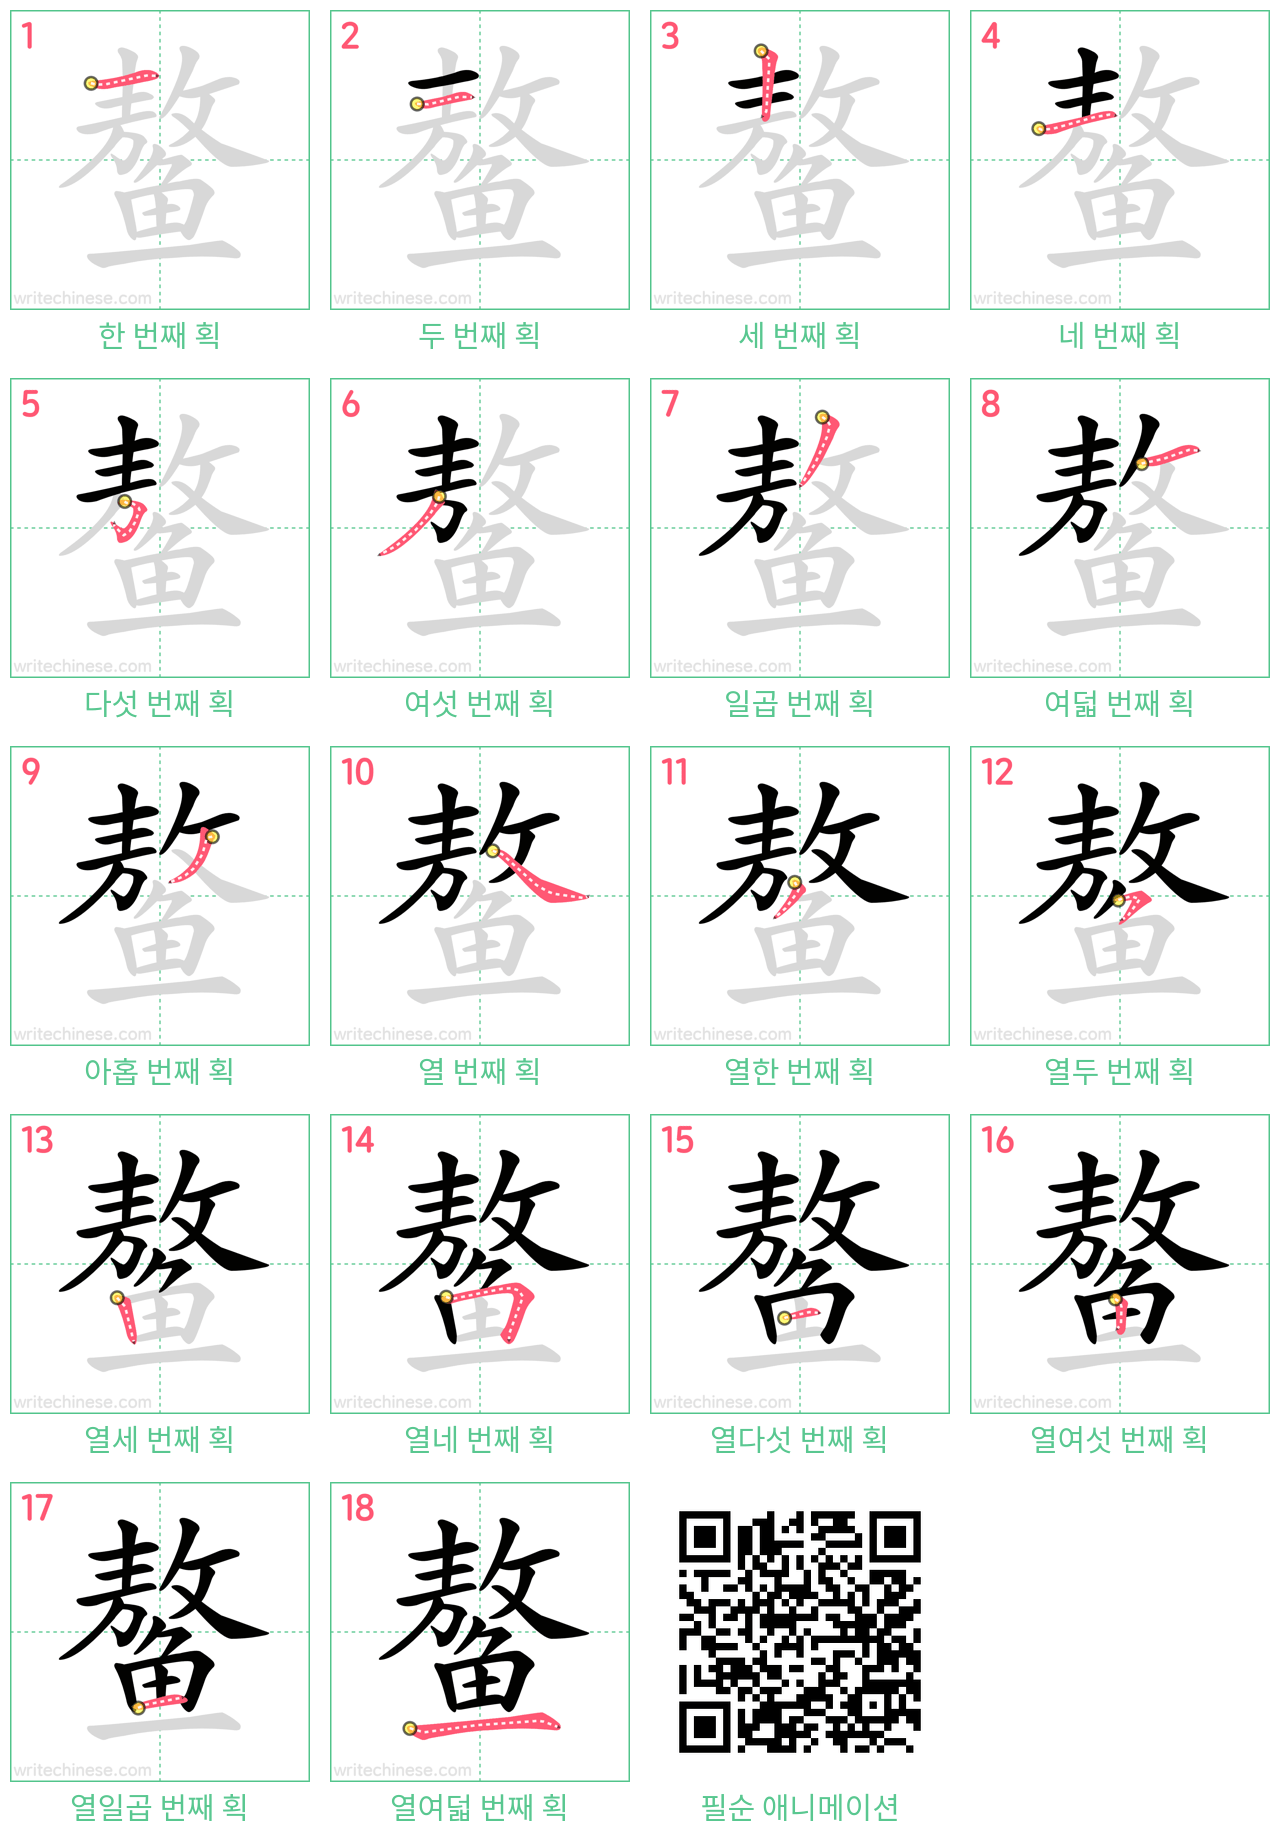 鳌 step-by-step stroke order diagrams